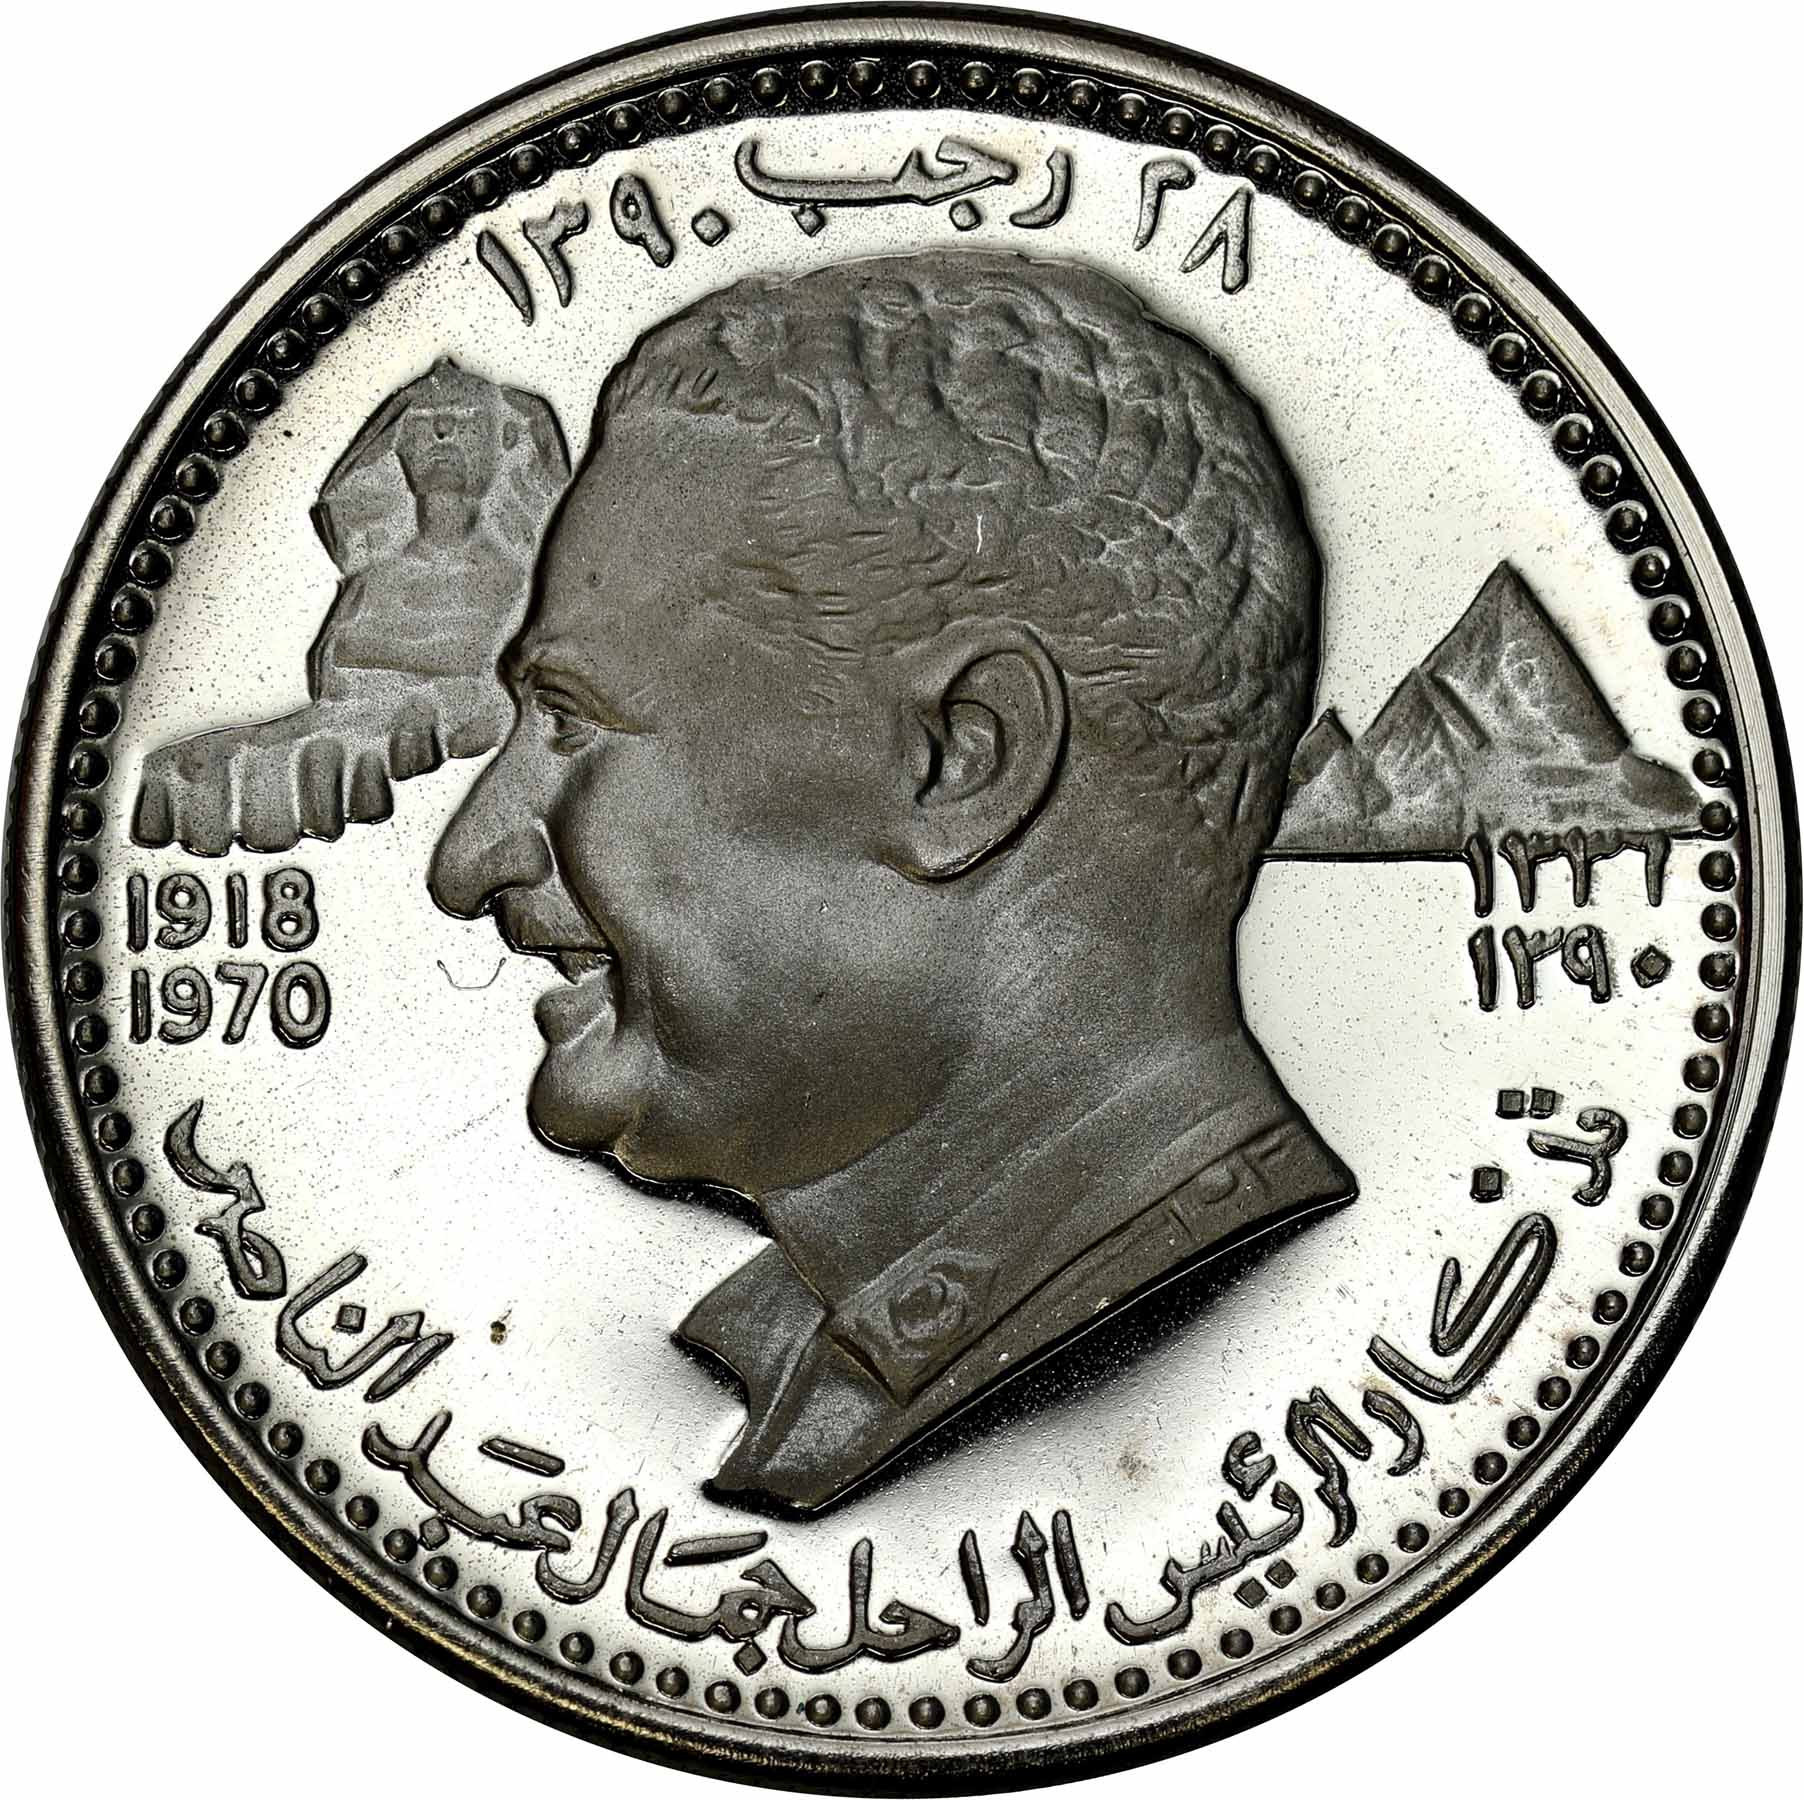 Zjednoczone Emiraty Arabskie - Ajman. Rashid bin Hamad (1928-1981). 5 riyals 1390 H (1970)